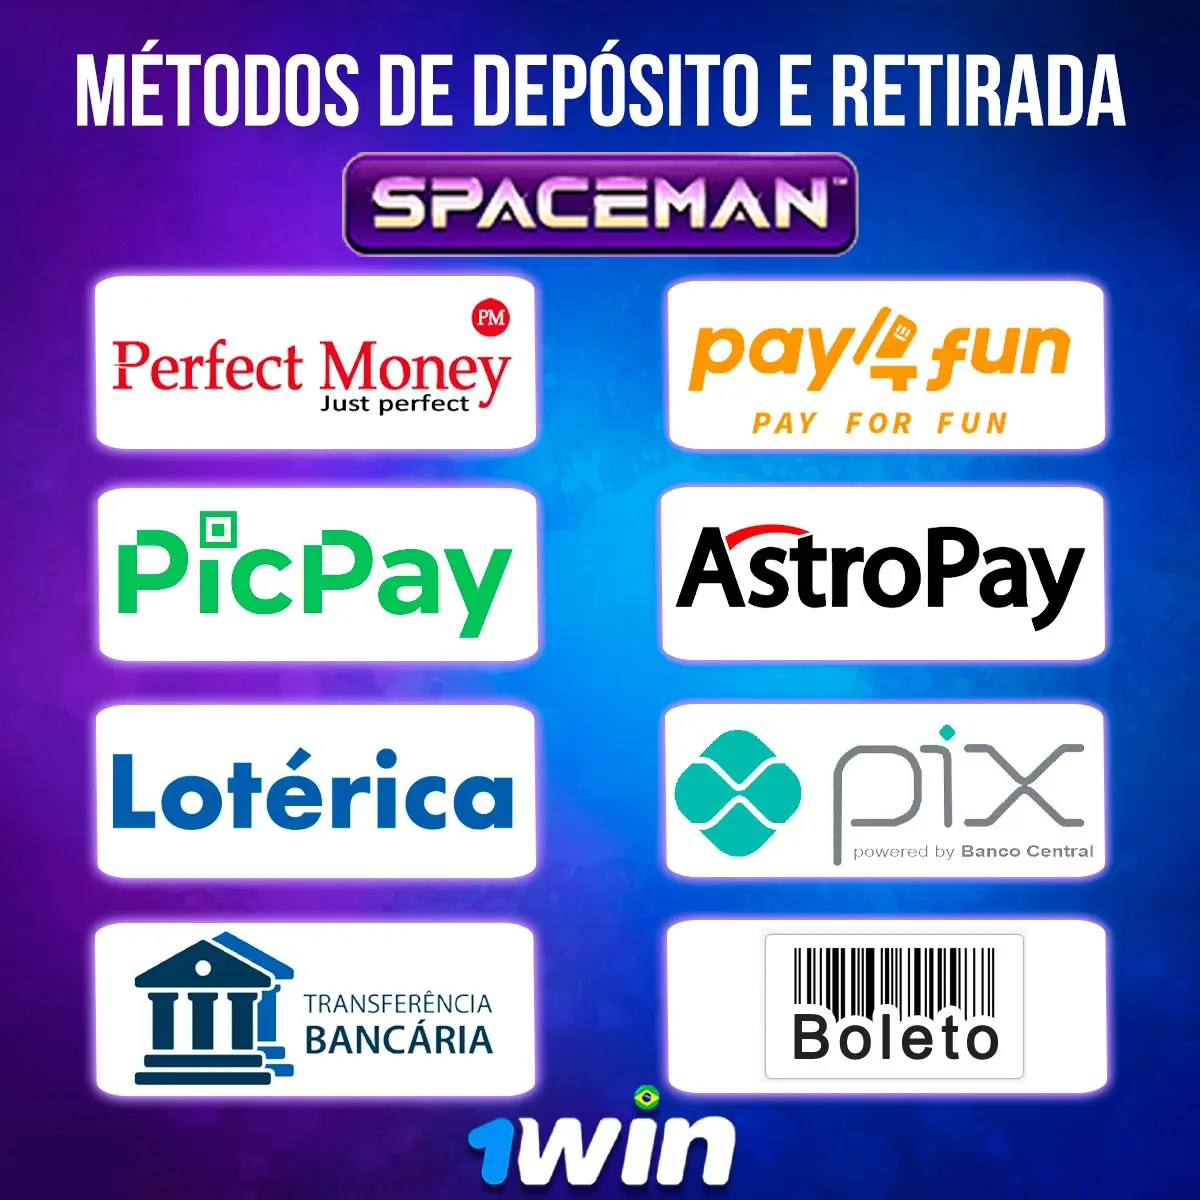 Métodos de pagamentos 1Win Spaceman jogo